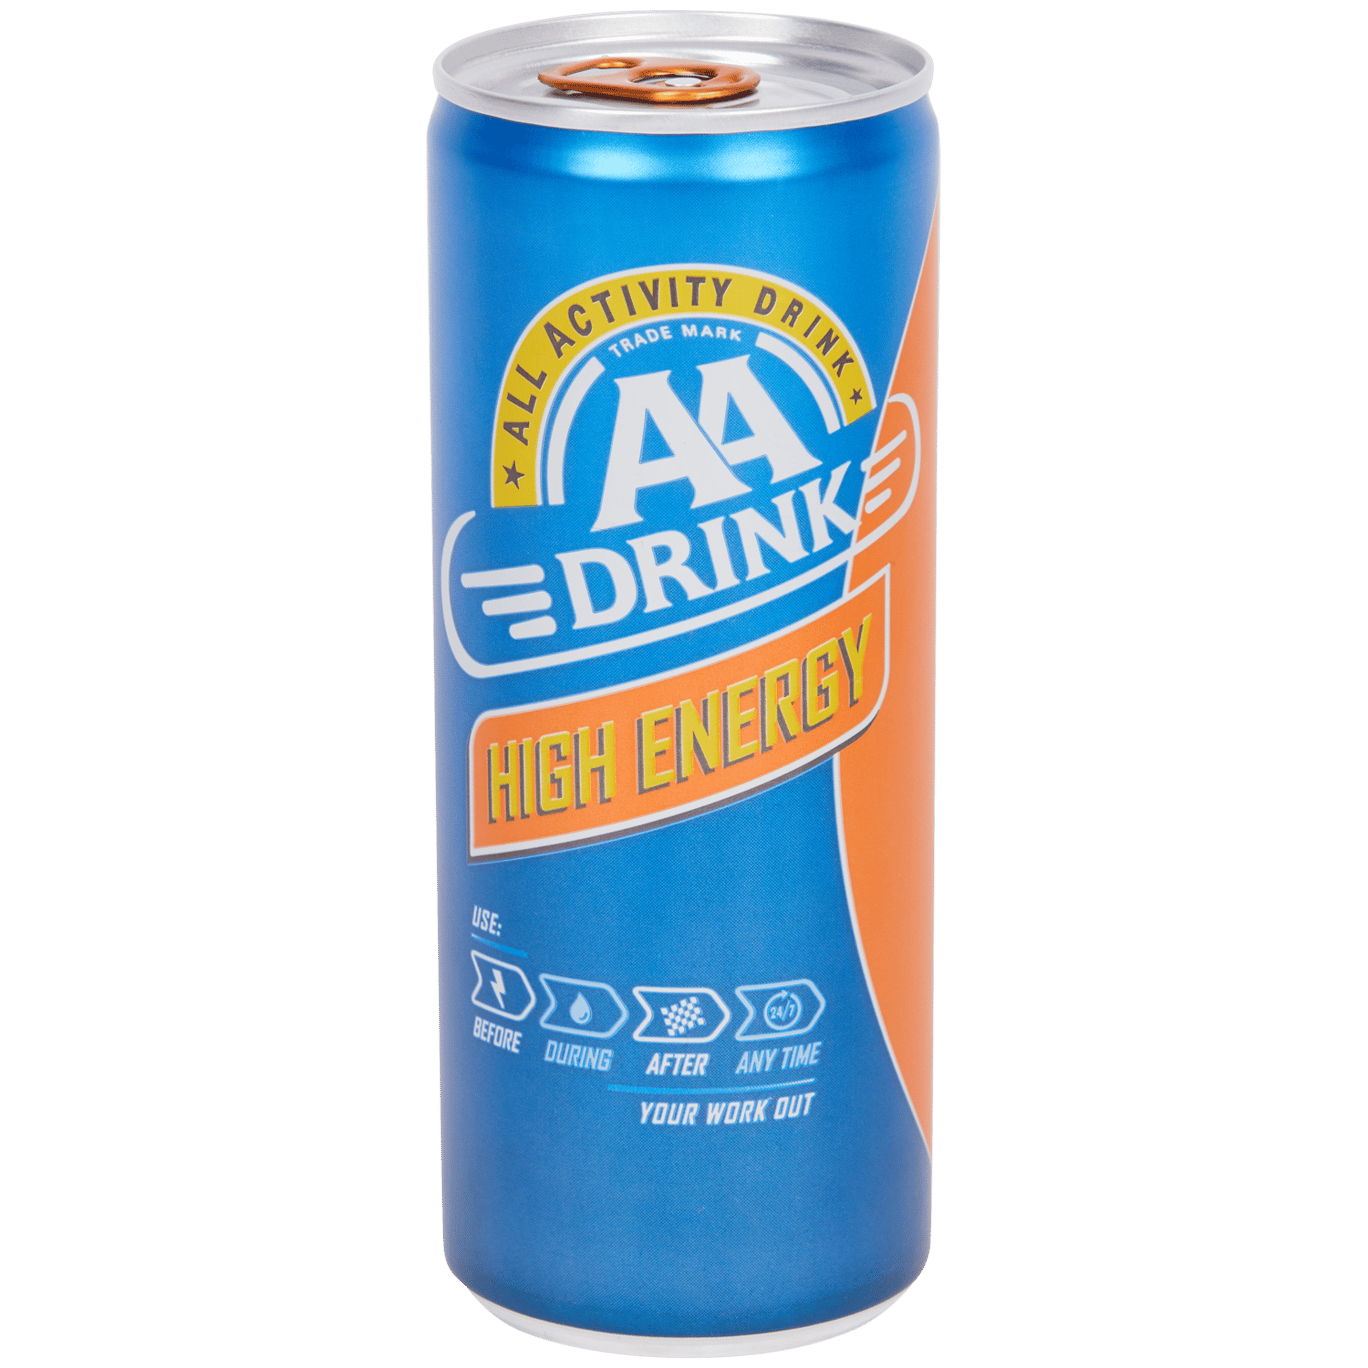 AA Drink High Energy energiedrank